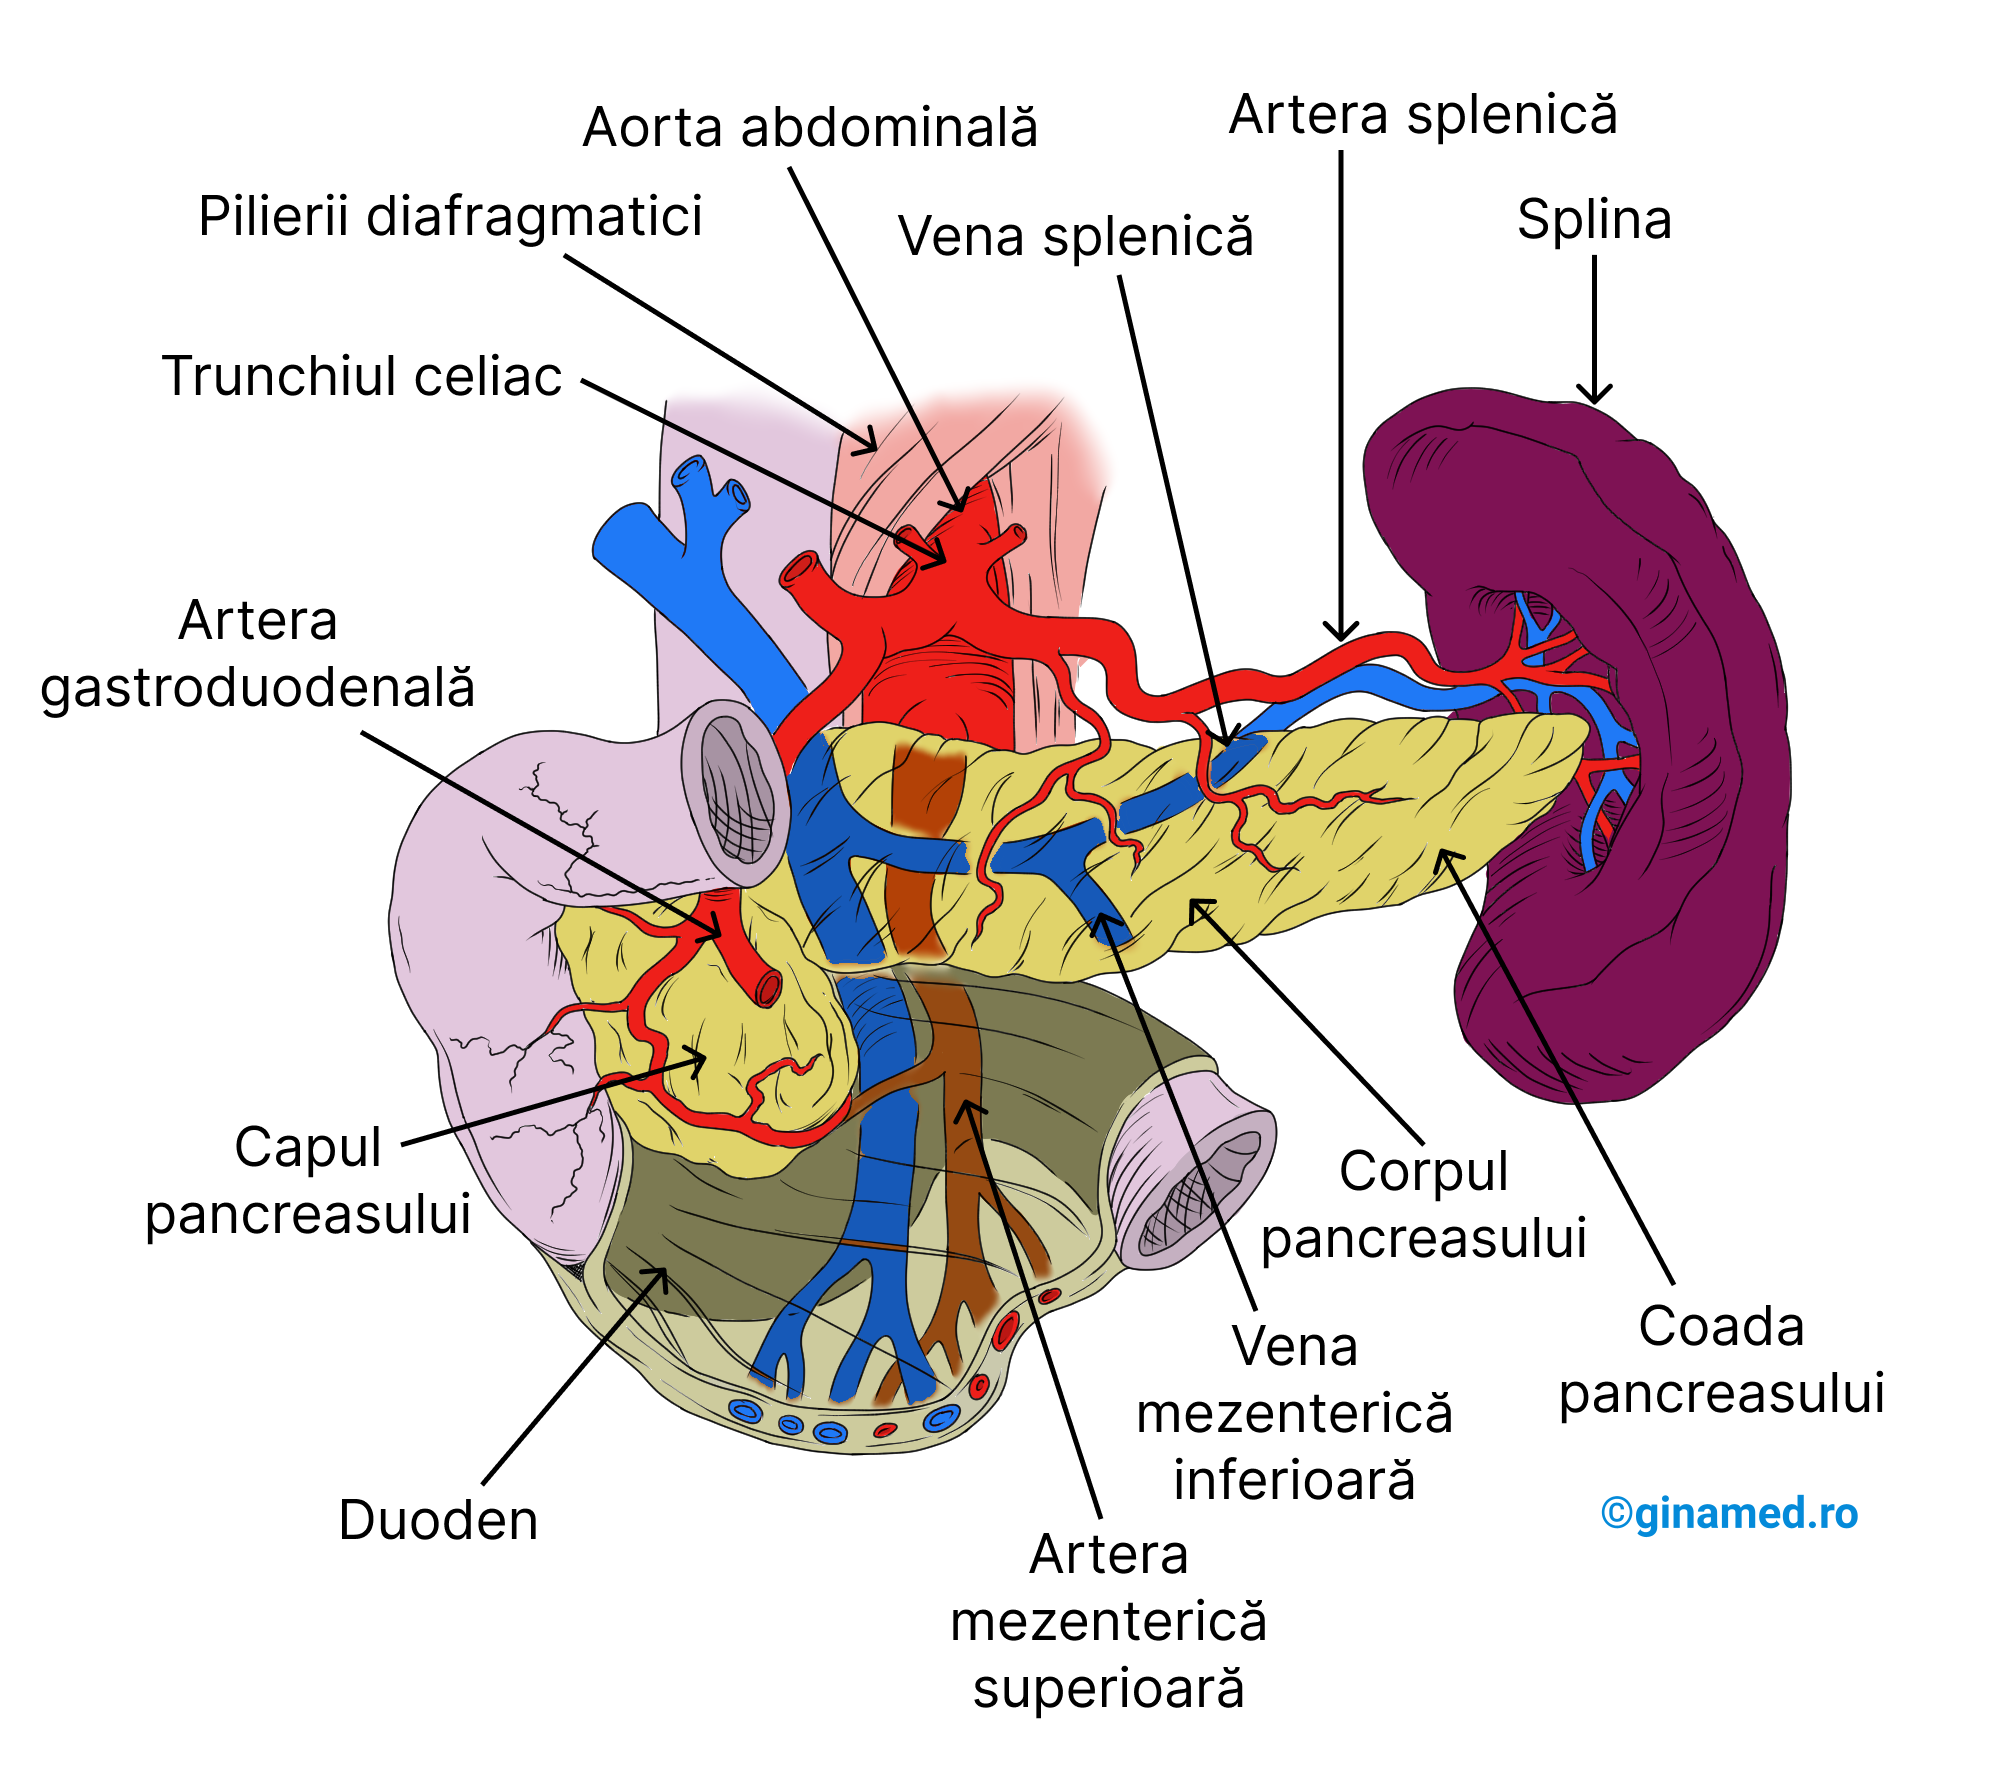 Pancreasul - vedere frontală a poziției sale anatomice din cavitatea abdominală (stomacul este dispus spre stânga pentru a observa pancreasul).